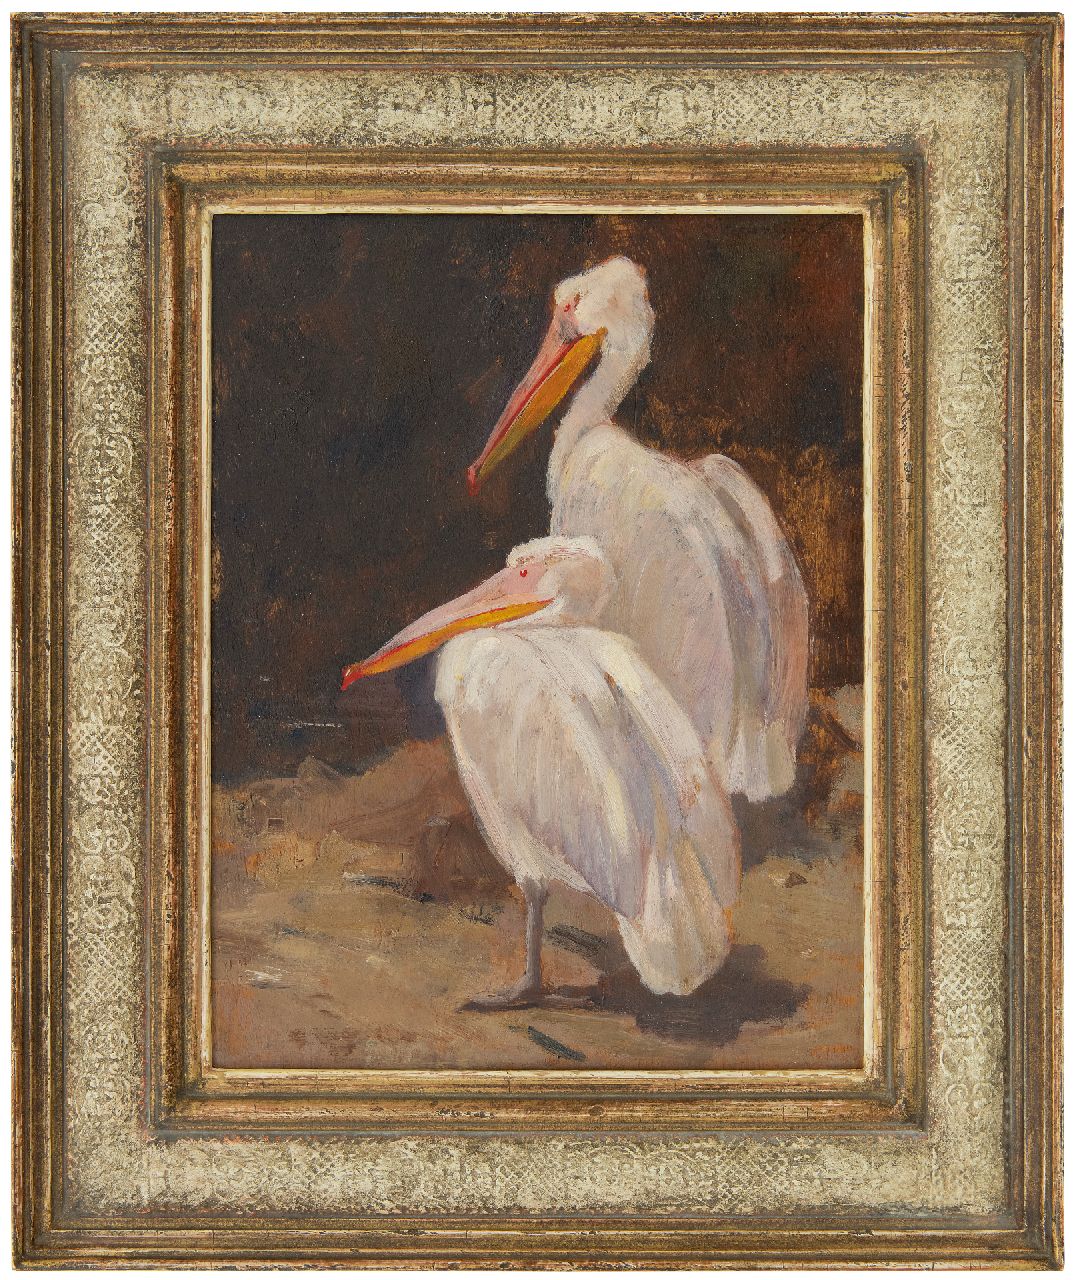 Mension C.J.  | Cornelis Jan Mension | Schilderijen te koop aangeboden | Twee pelikanen, olieverf op paneel 36,5 x 27,2 cm, gesigneerd rechtsboven